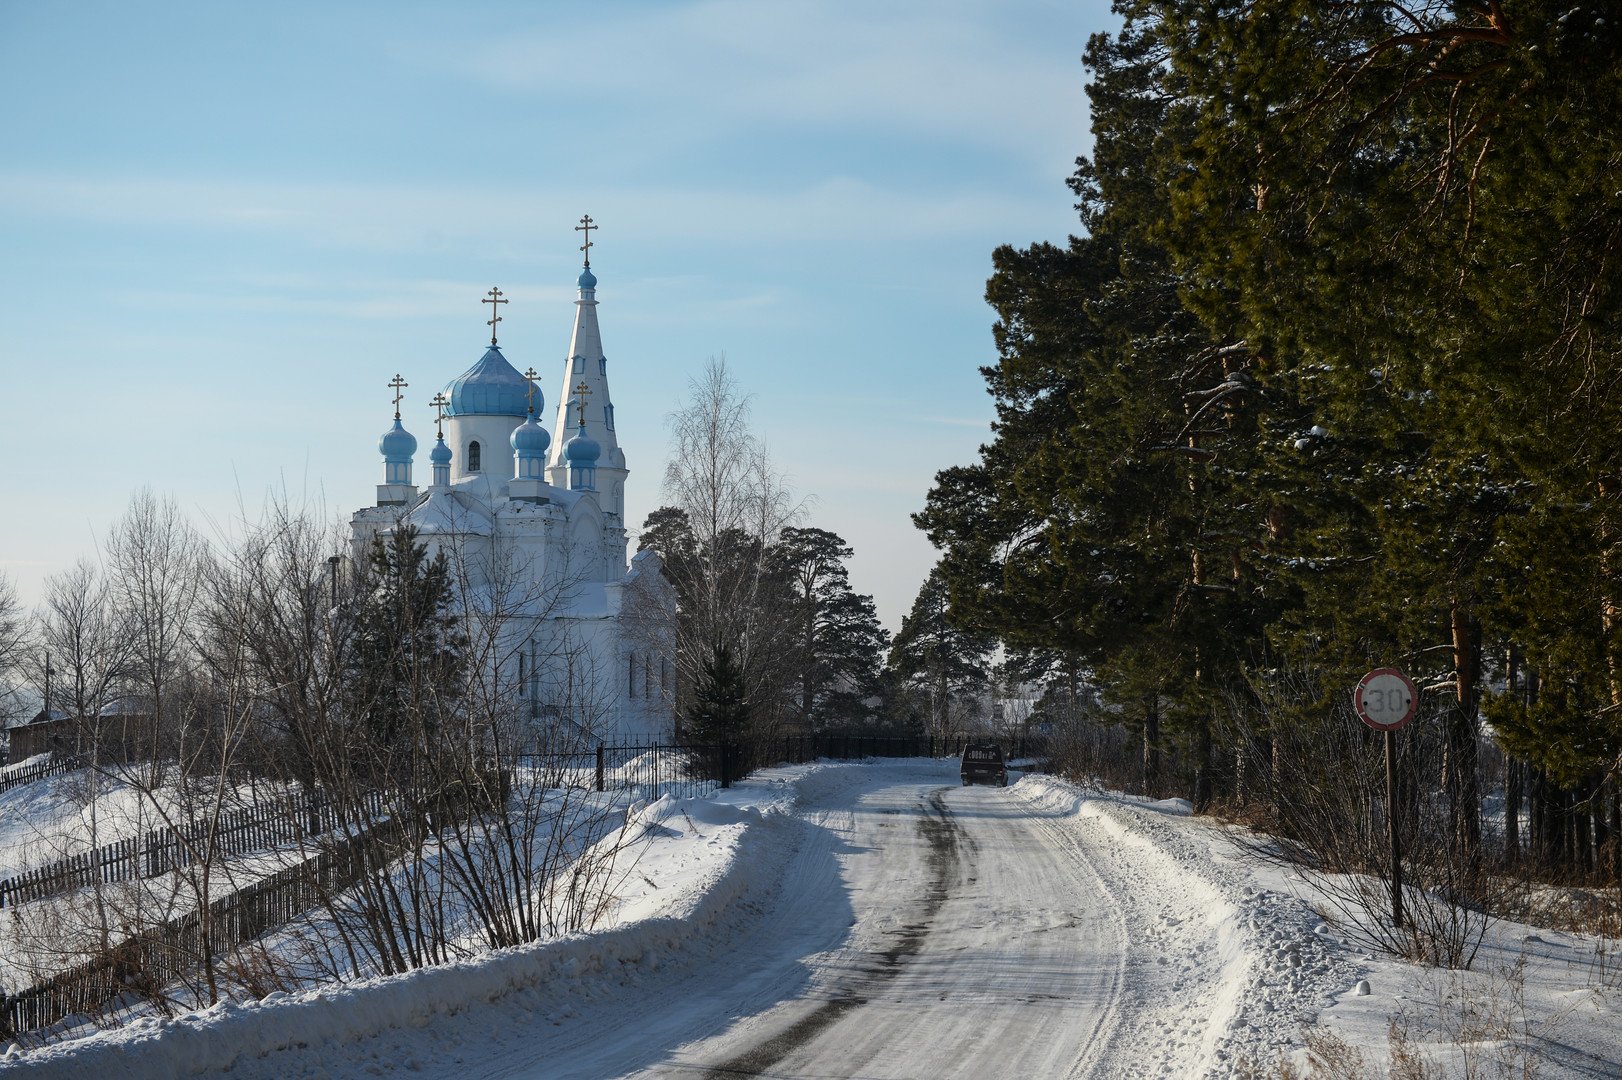 كنيسة القديس ألكسندر نيفسكي في قرية أودينسوفكا في إقليم ألتاي